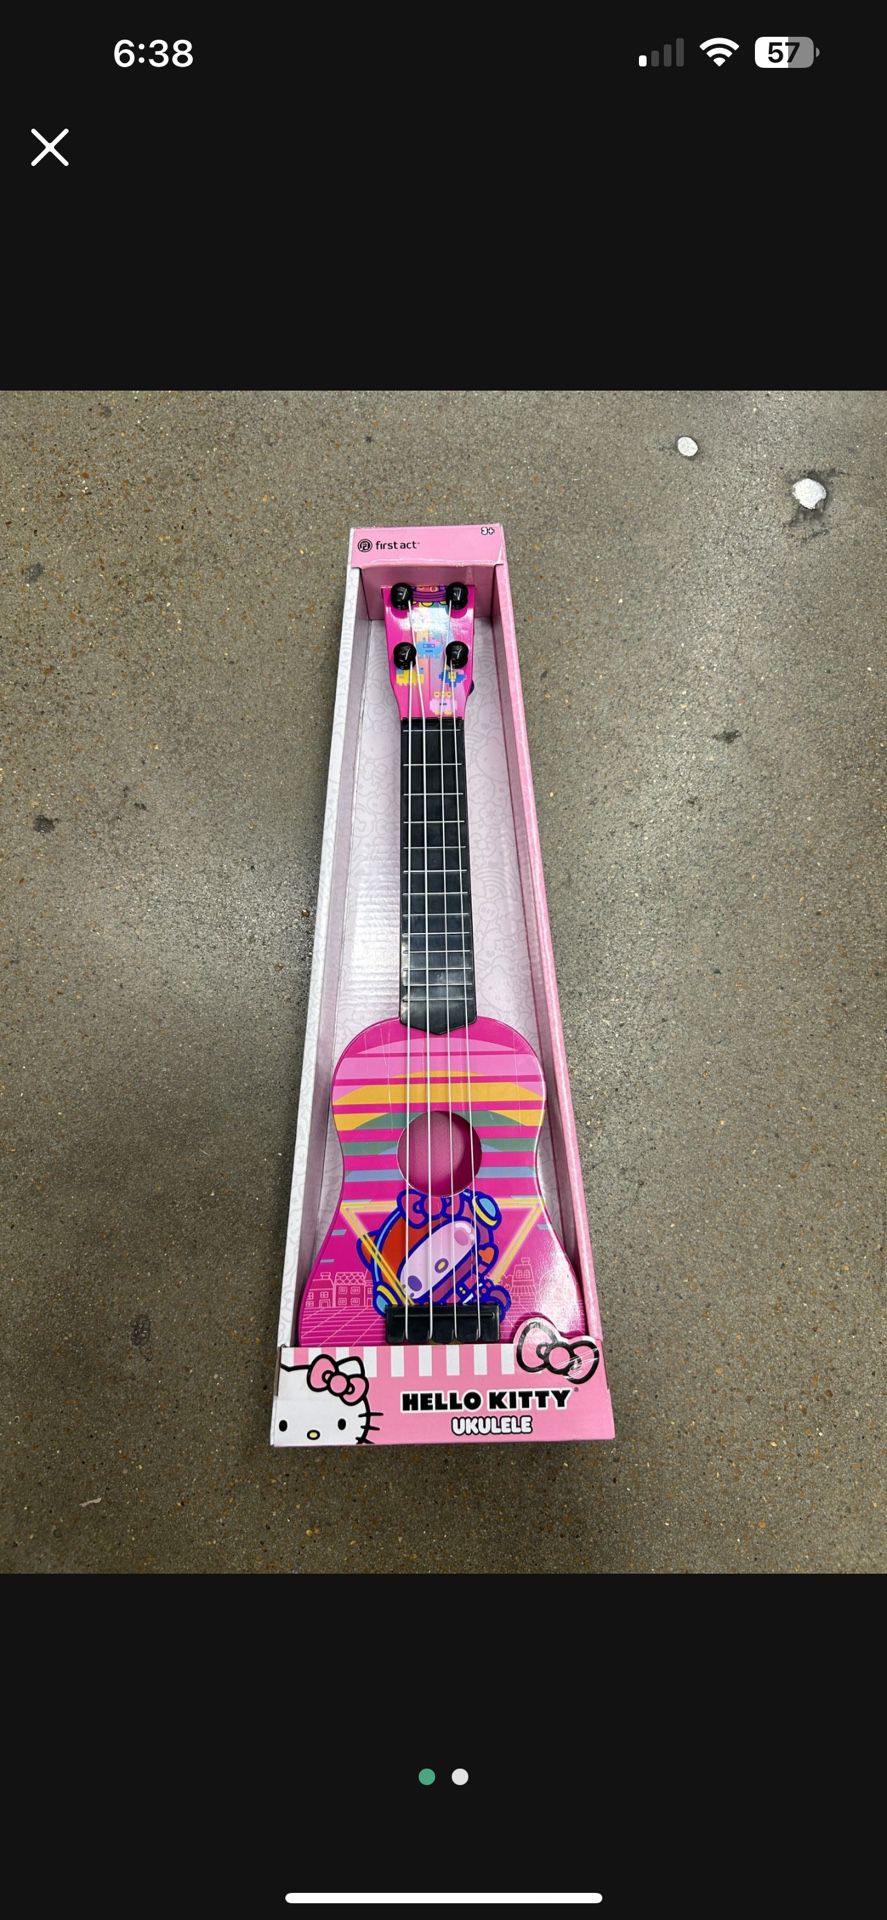 NWT hello kitty ukulele 